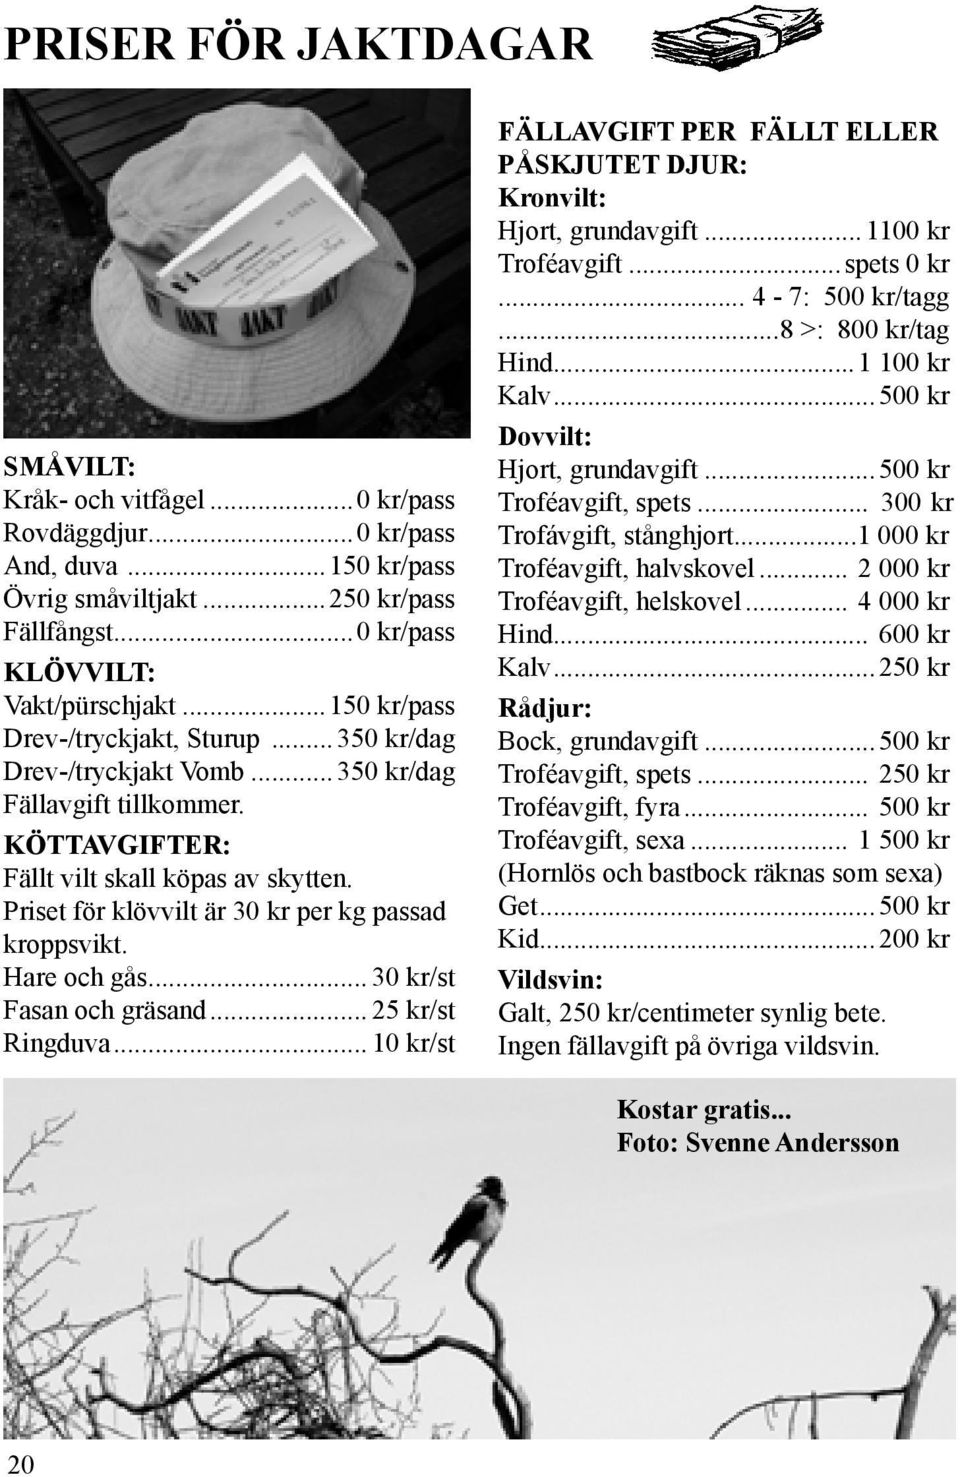 Priset för klövvilt är 30 kr per kg passad kroppsvikt. Hare och gås... 30 kr/st Fasan och gräsand... 25 kr/st Ringduva.